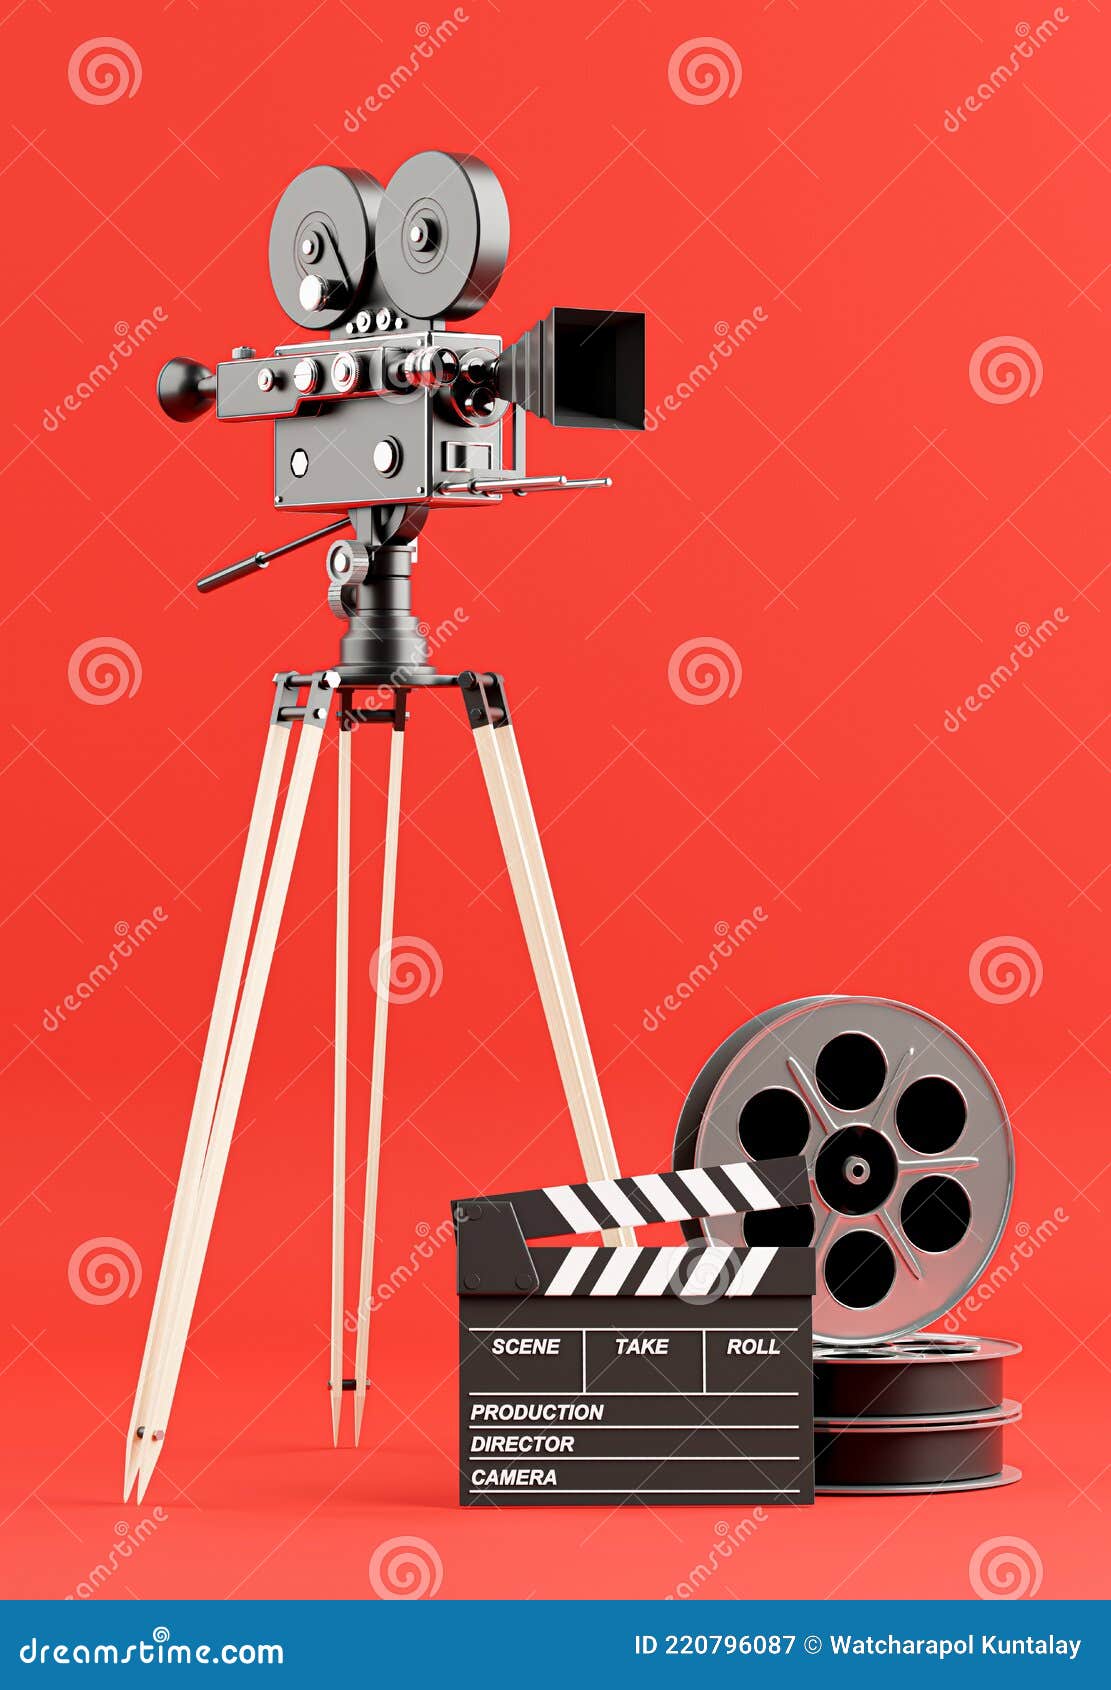 Retro Movie Camera with Reel Film,clapper Board Stock Illustration